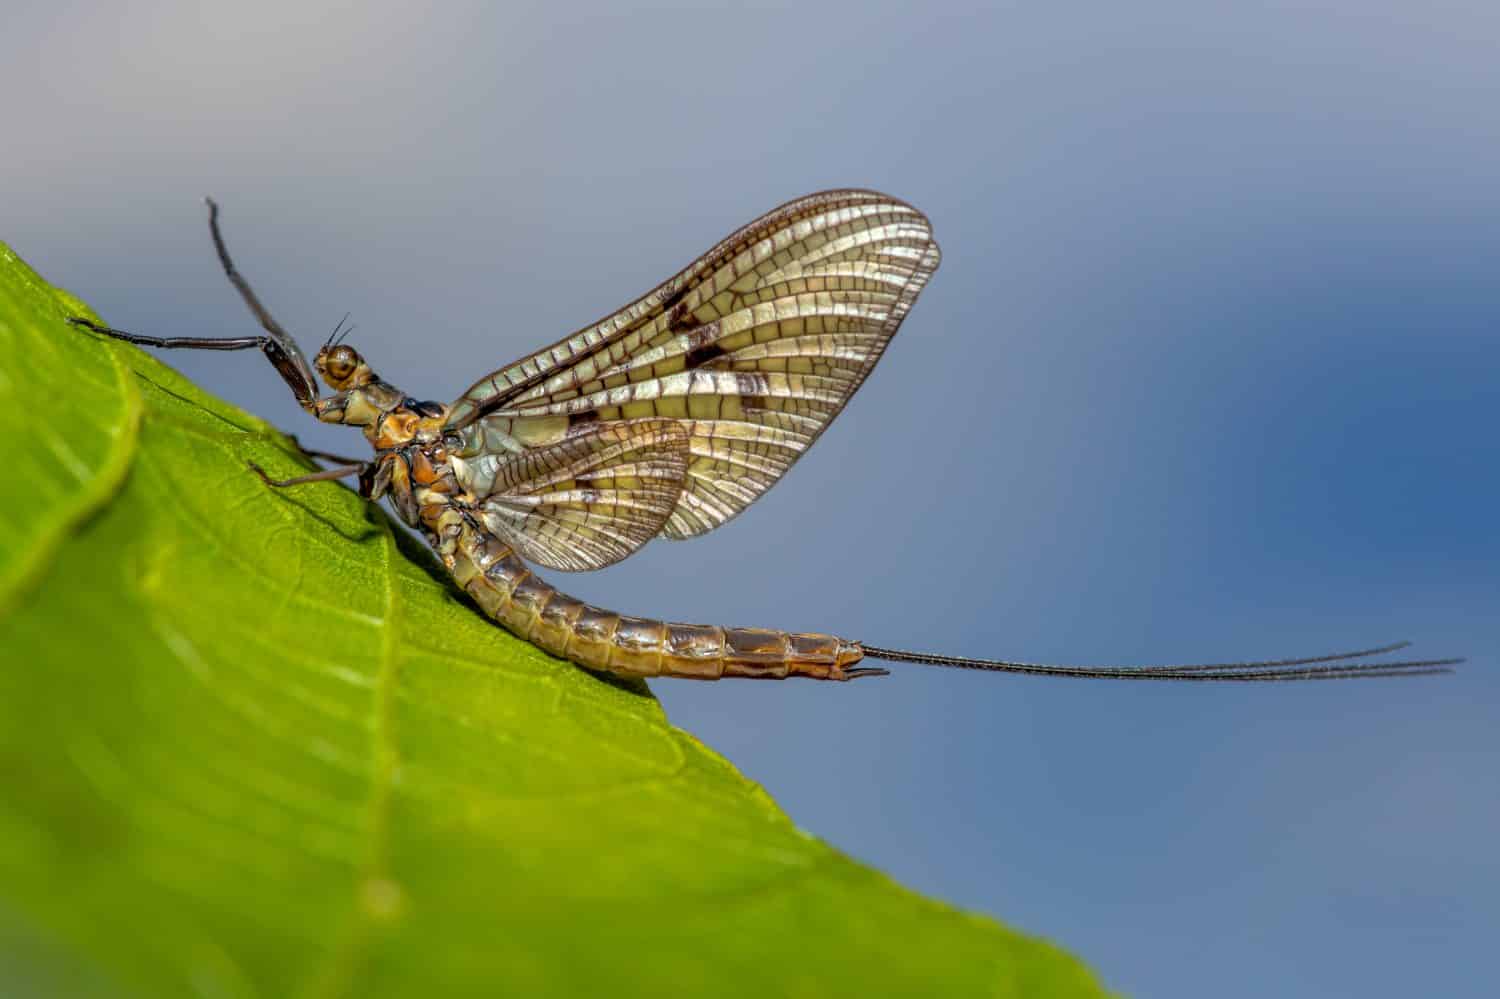 A Mayfly sitting on a leaf